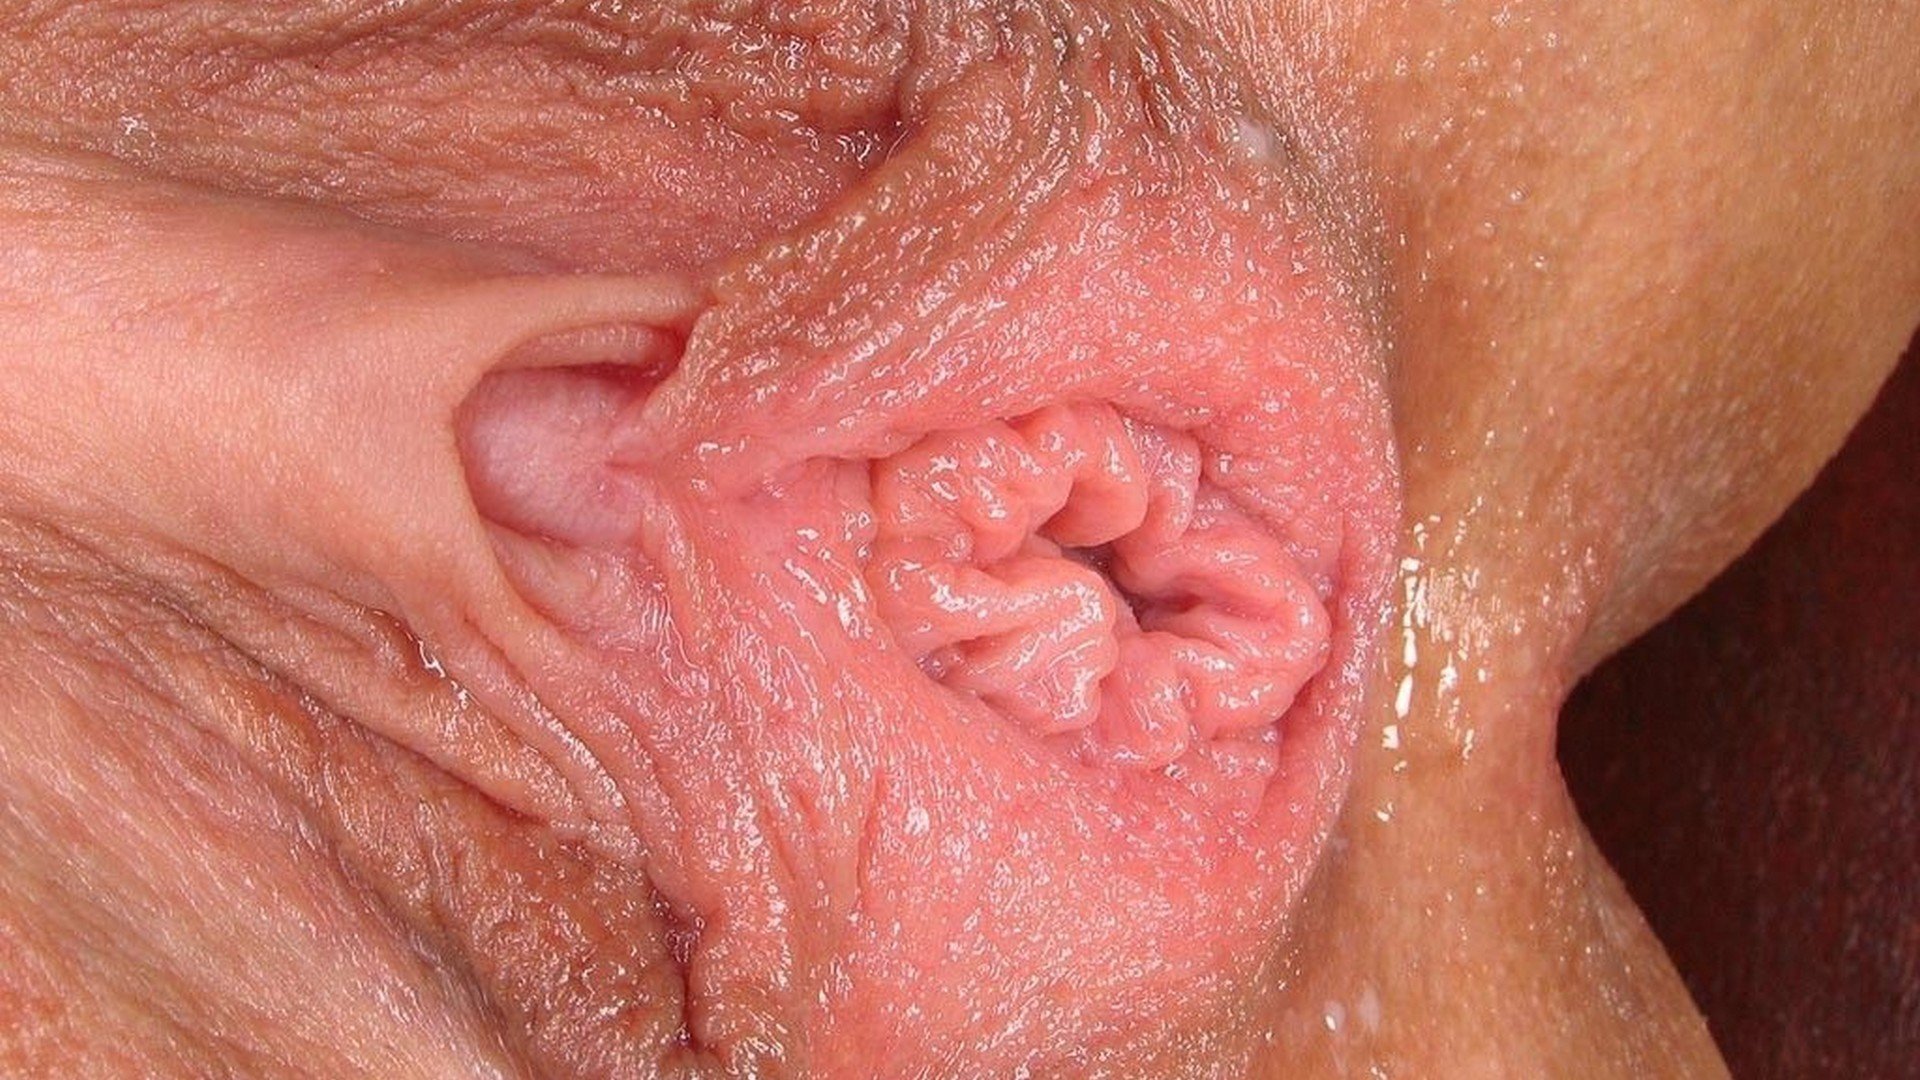 Clitoris images of nude ladies